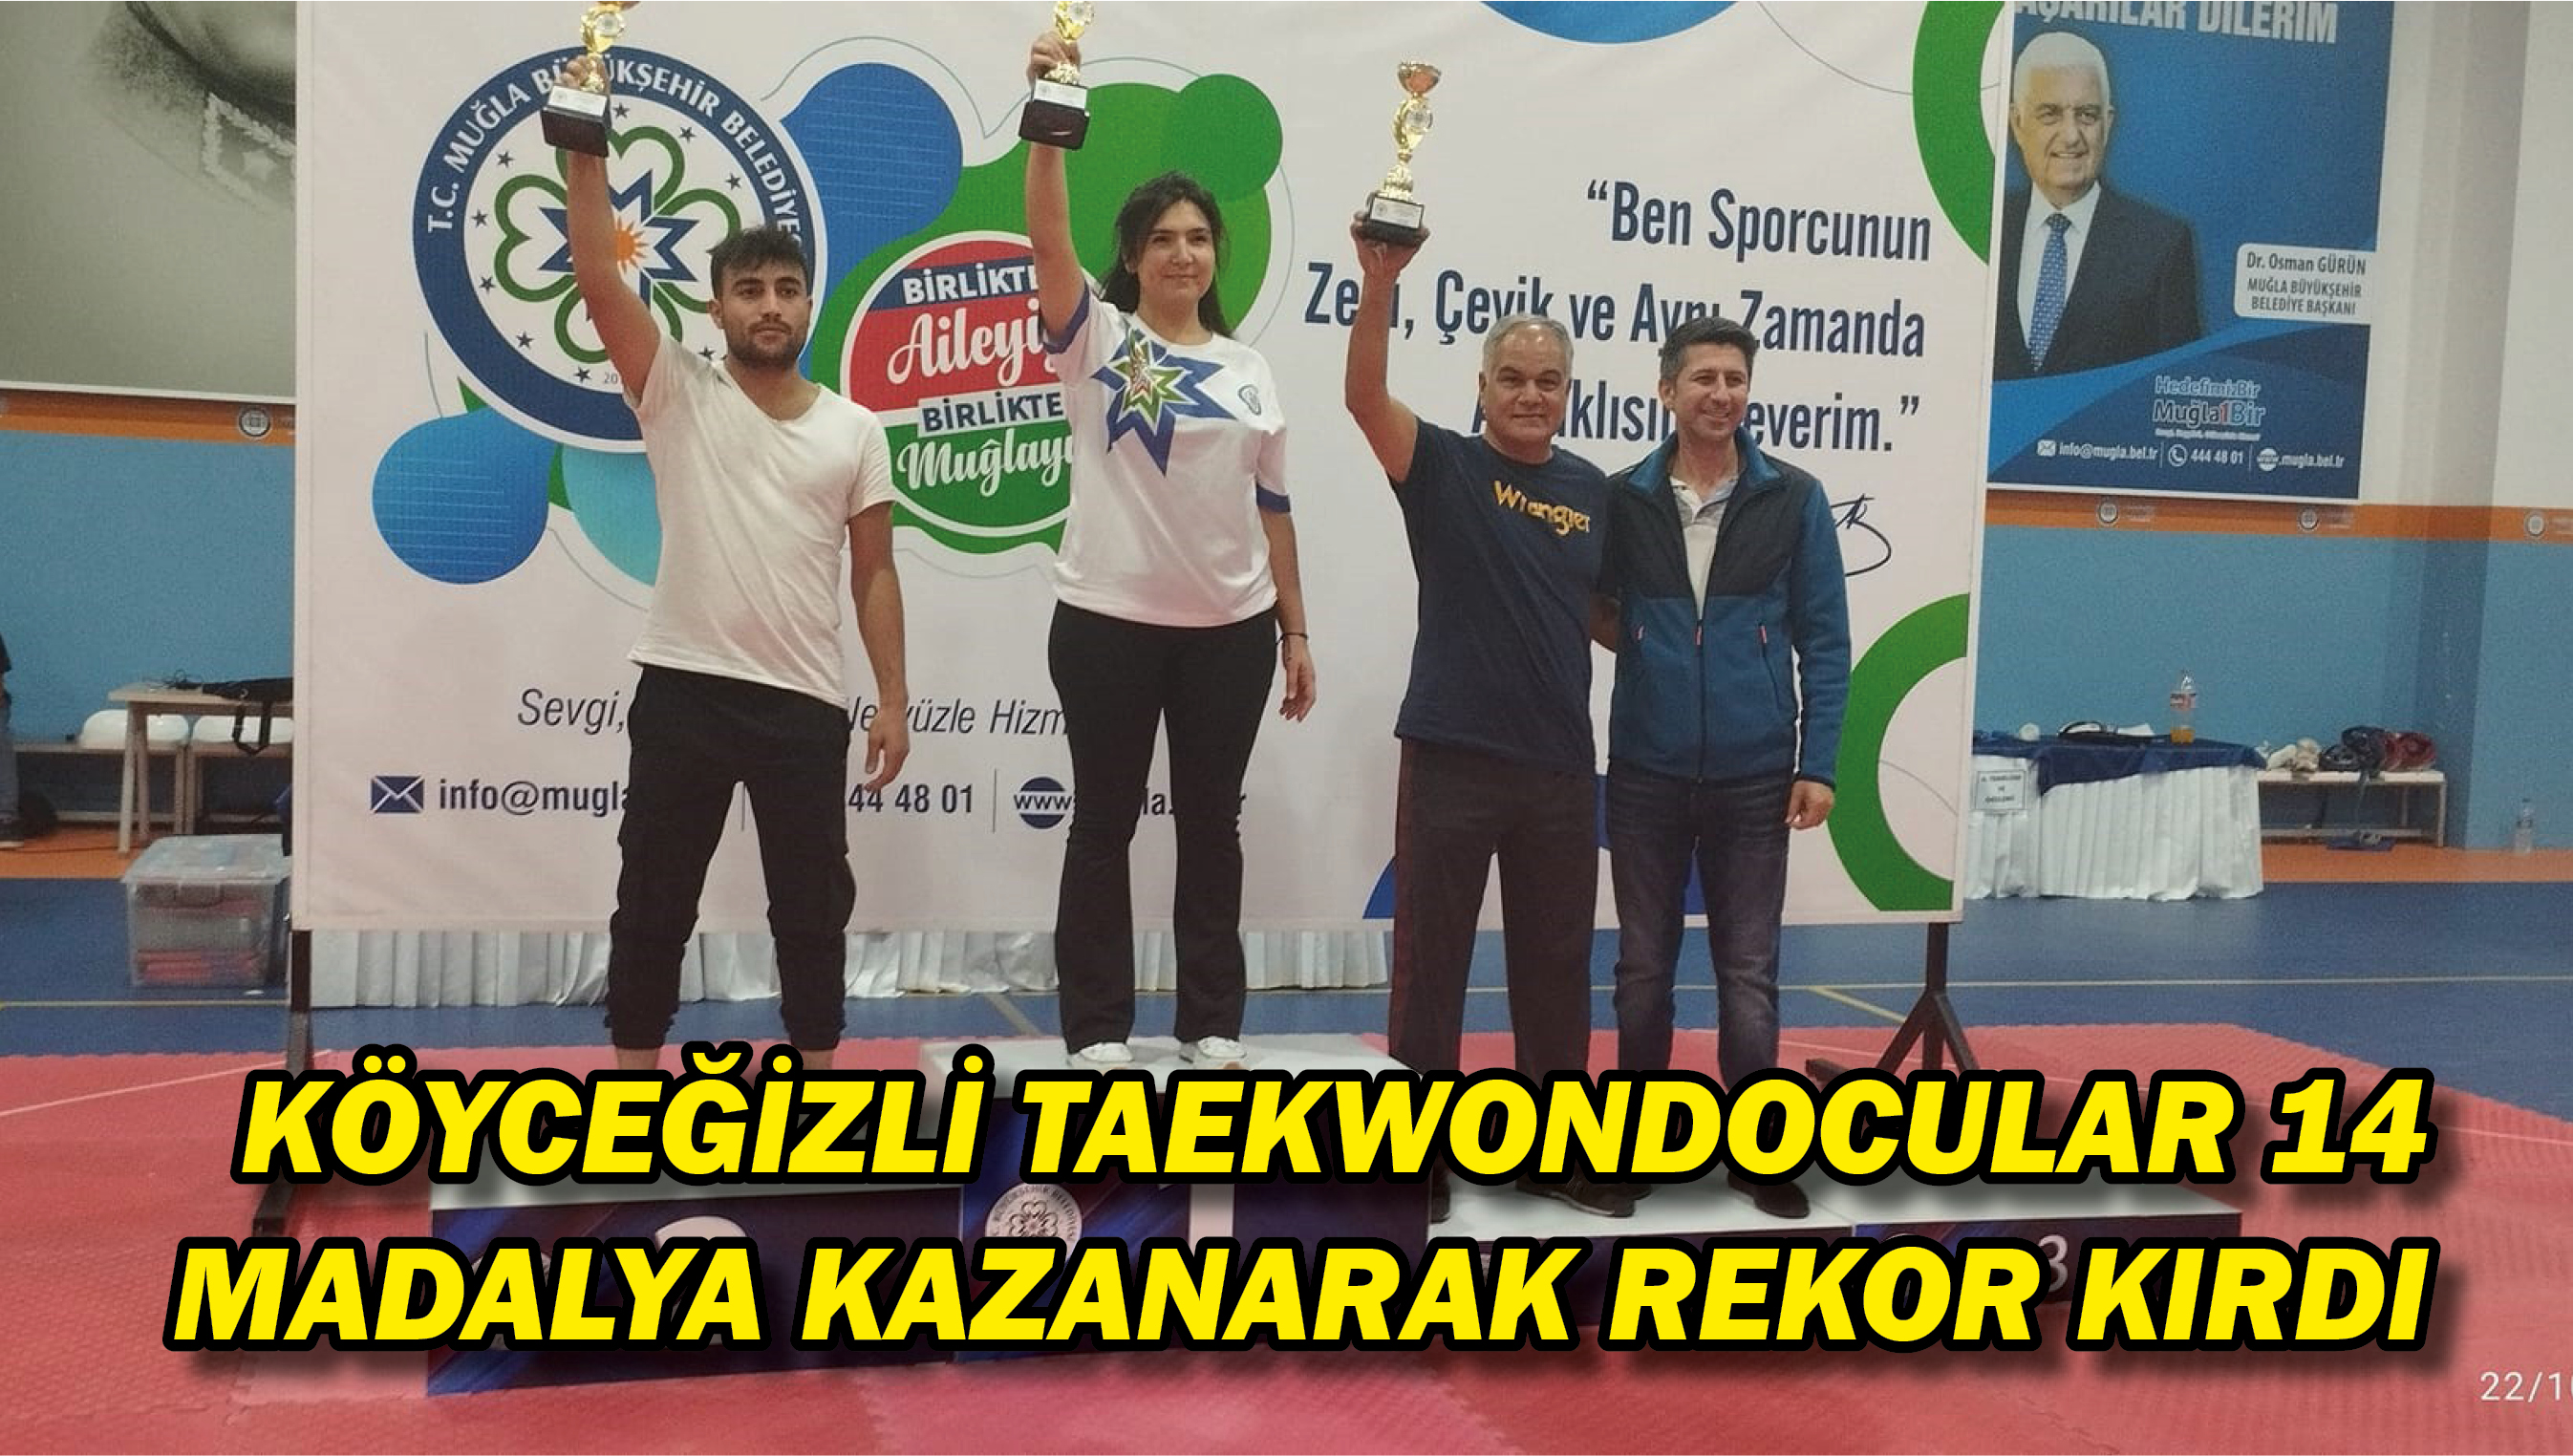 Köyceğizli taekwondocular 14 madalya kazanarak rekor kırdı